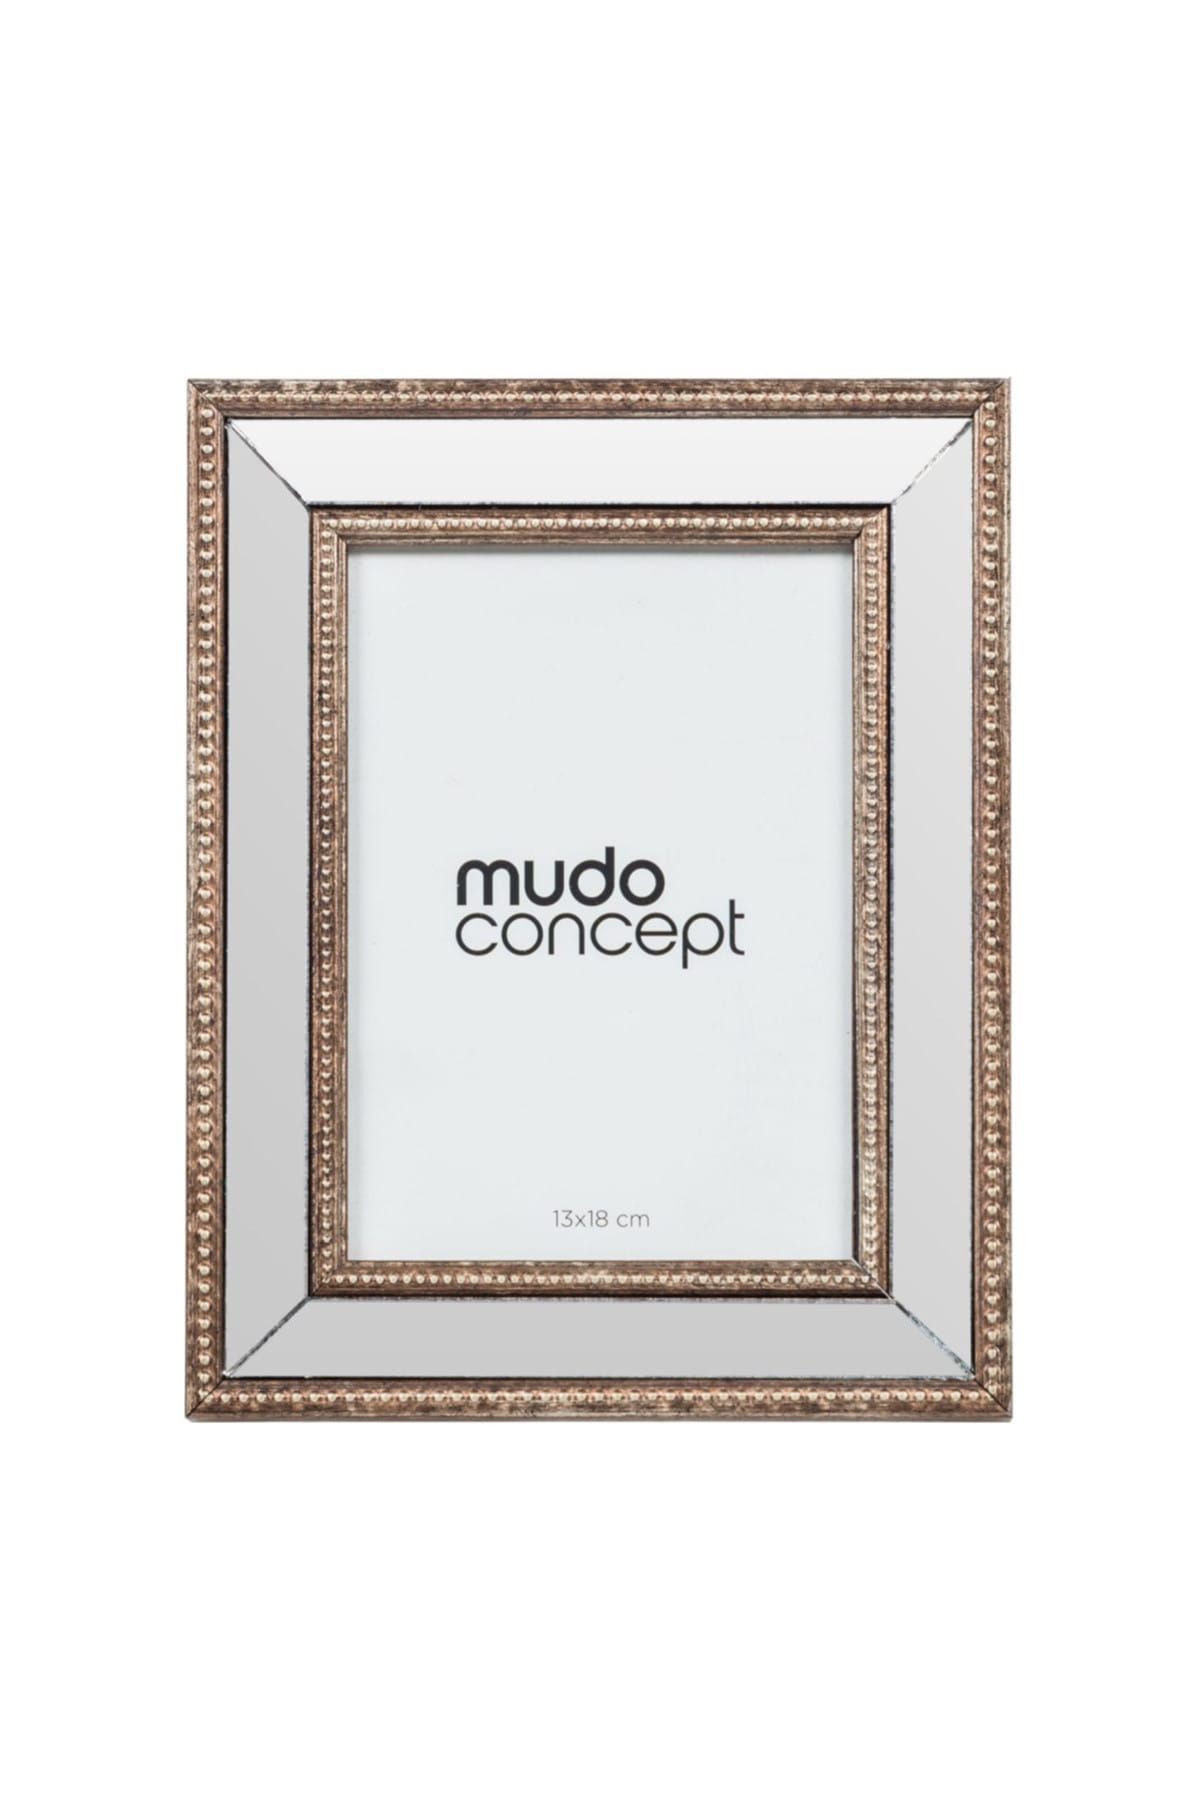 Mudo Concept roma fotoğraf çerçevesi 13x18cm